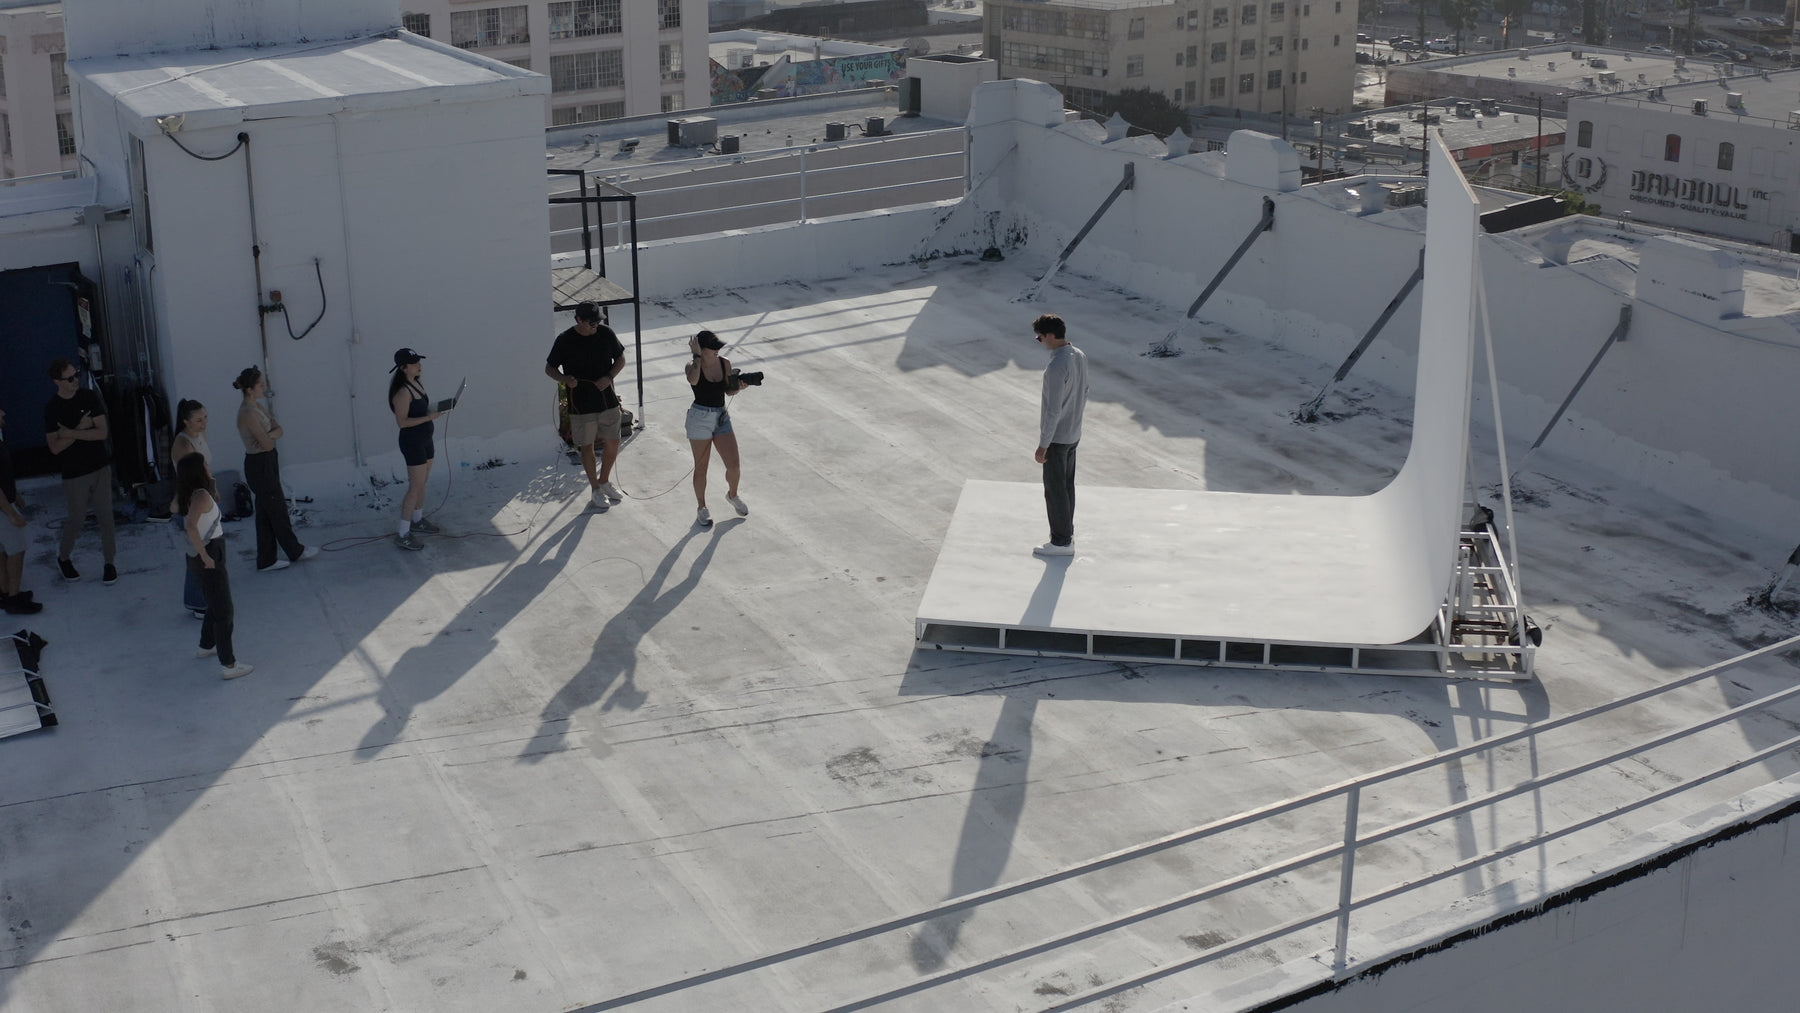 Apex Photo Studios Rooftop Cyclorama in los angeles california | photo studio LA